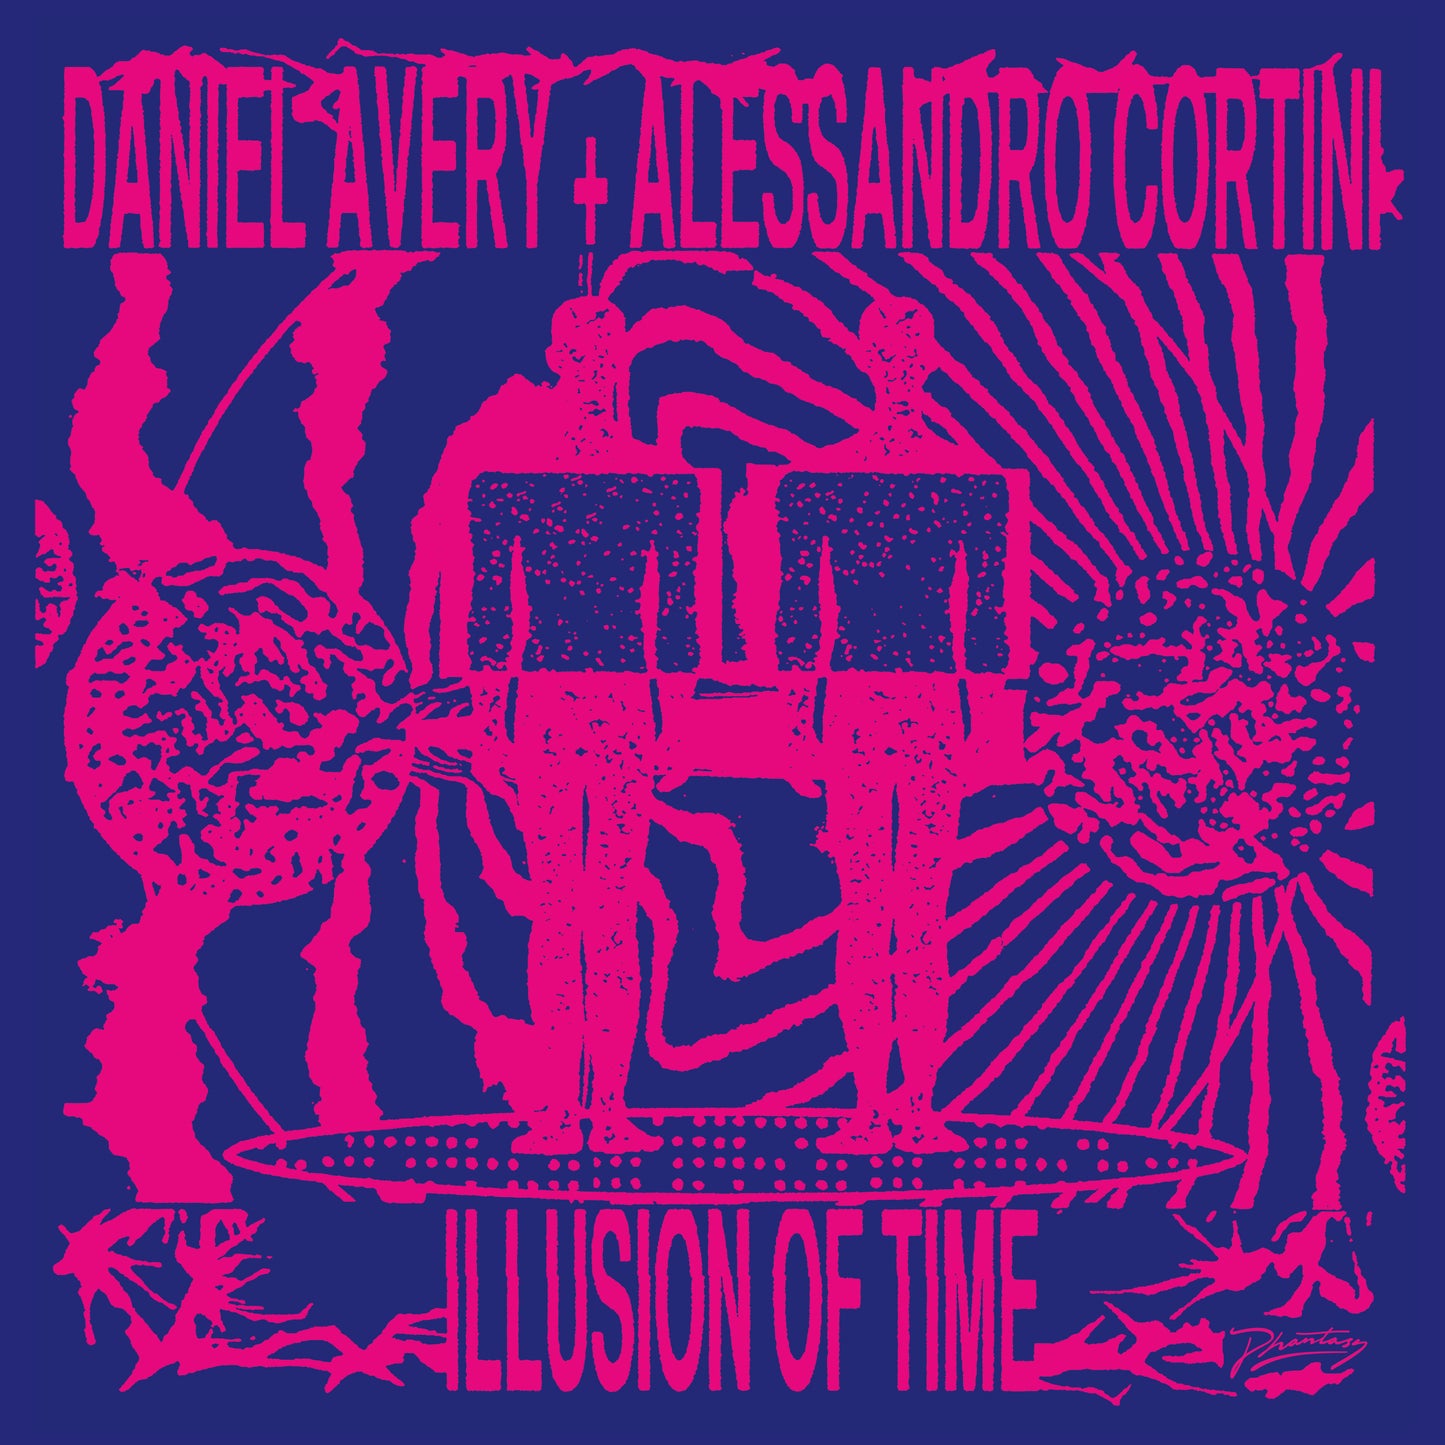 Daniel Avery & Alessandro Cortini 'Illusion Of Time' LP (Love Record Stores)